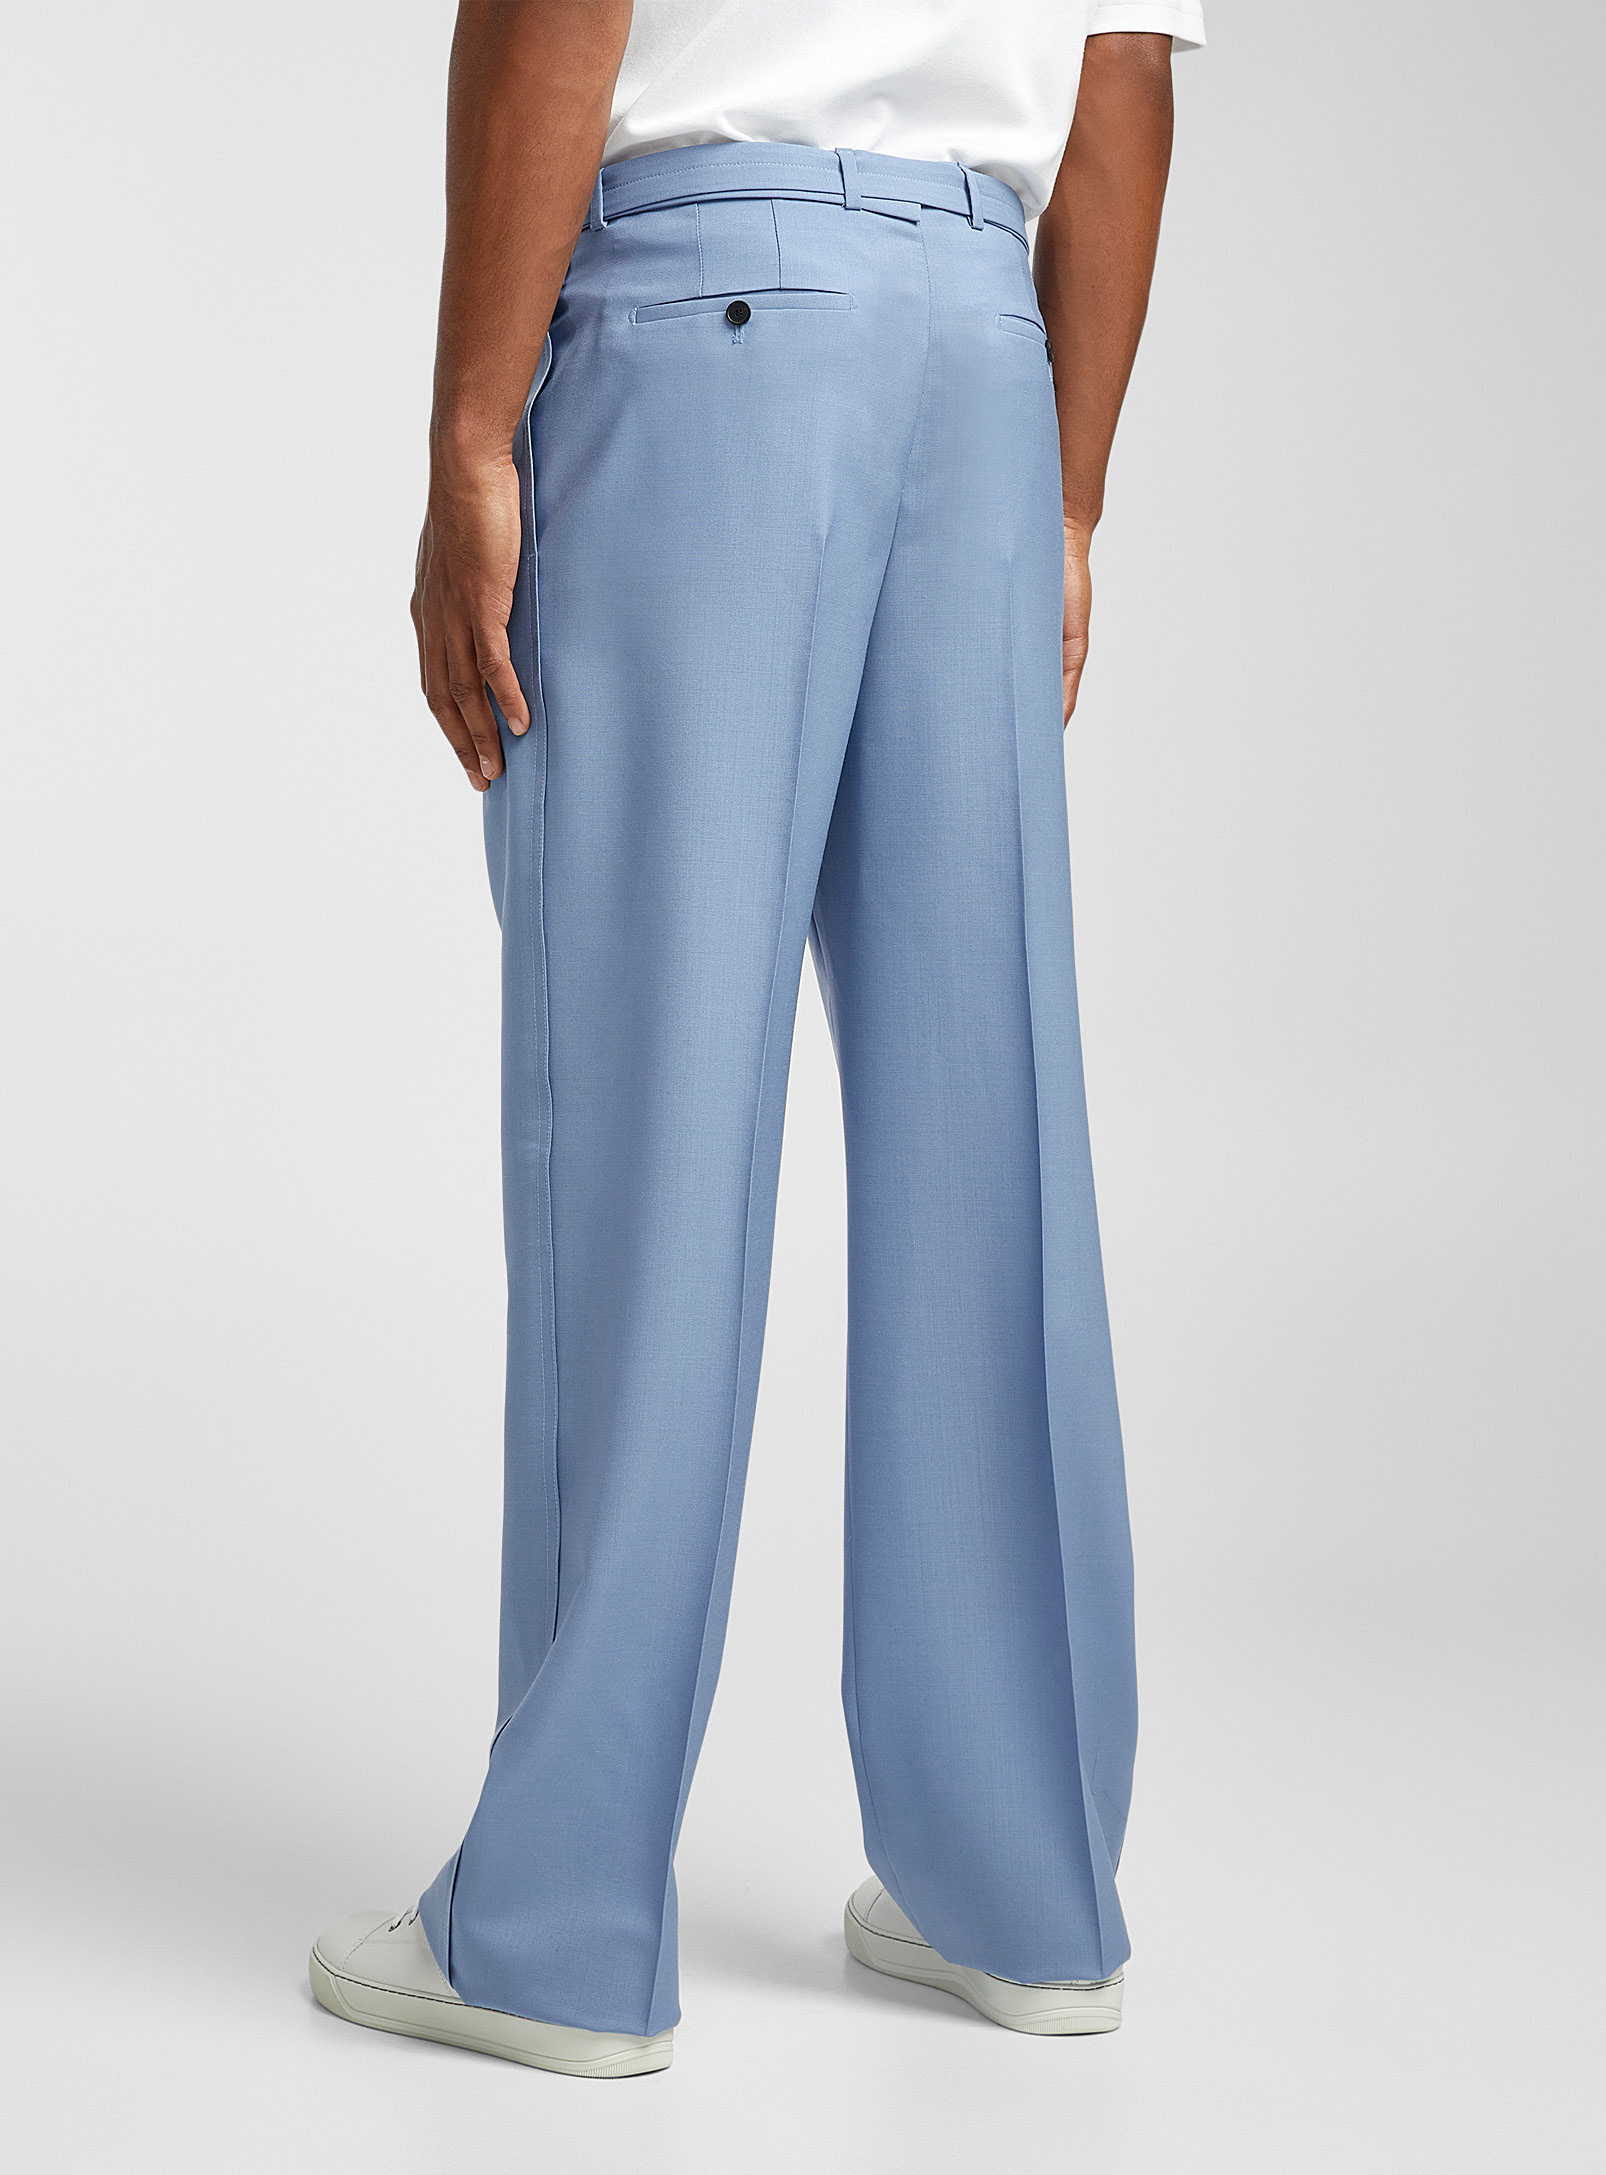 Lanvin - Le pantalon droit ceinturé bleu brouillard